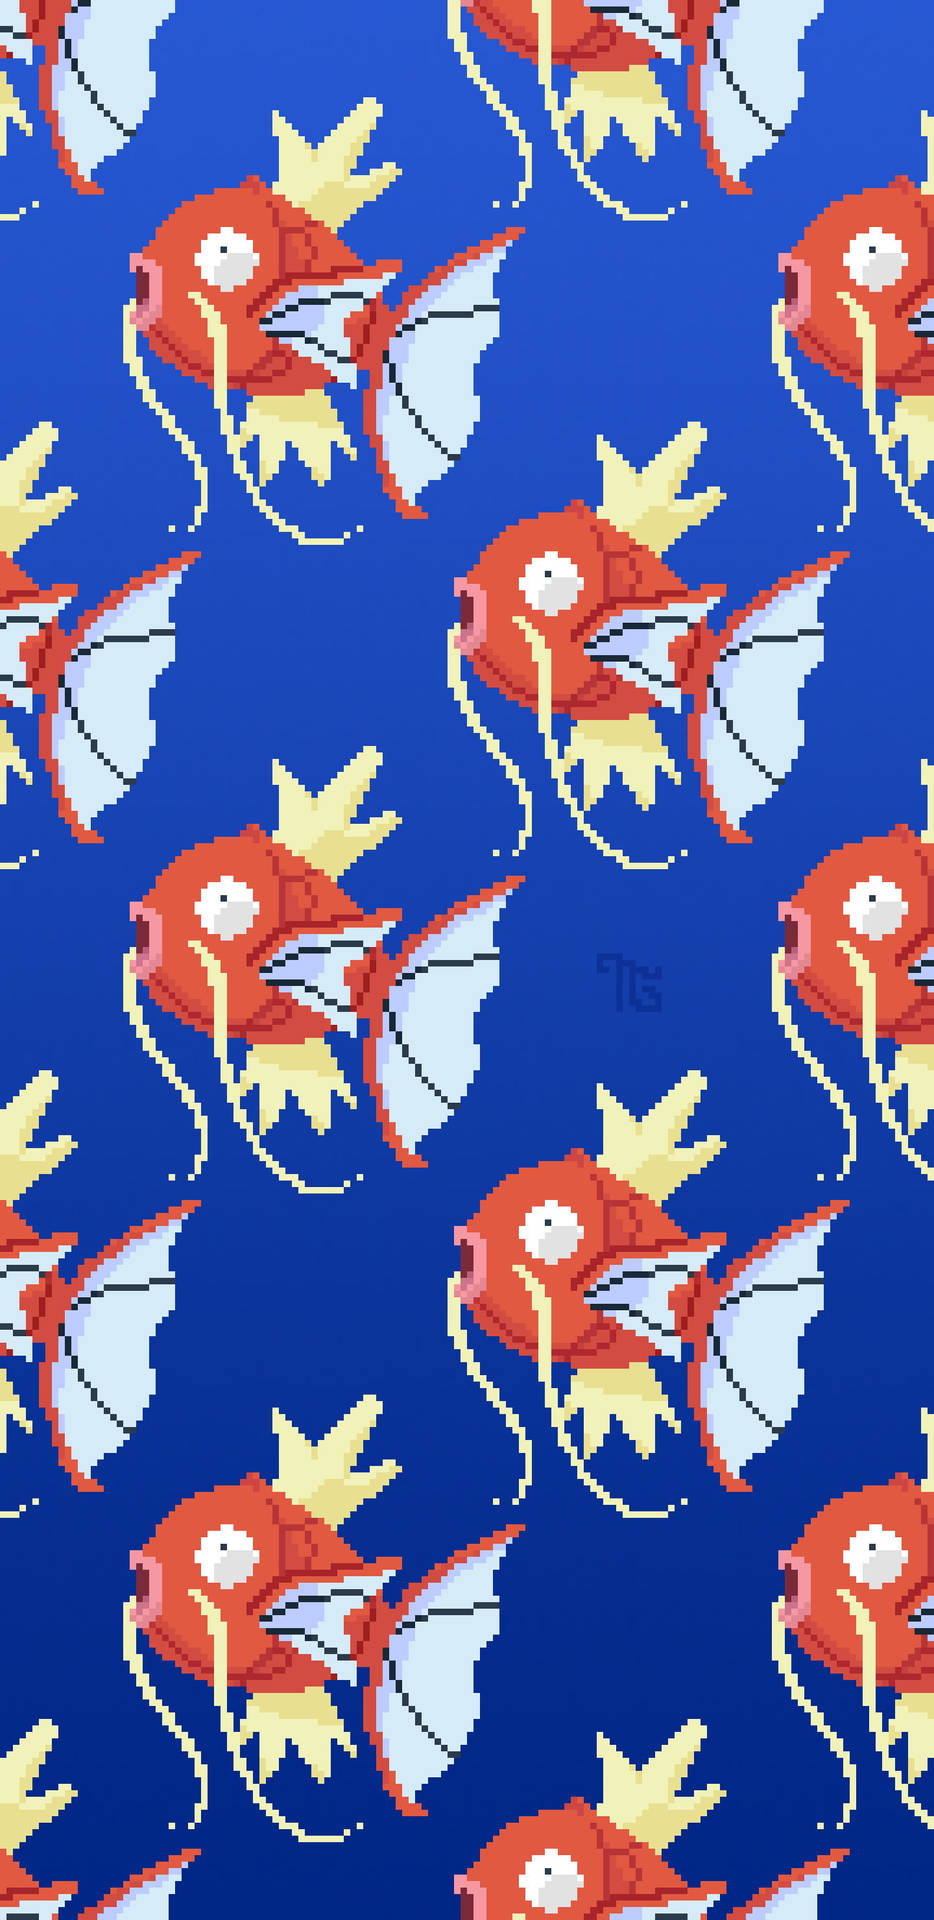 Magikarp Form Pokemon In Aesthetic Pixel Art Wallpaper